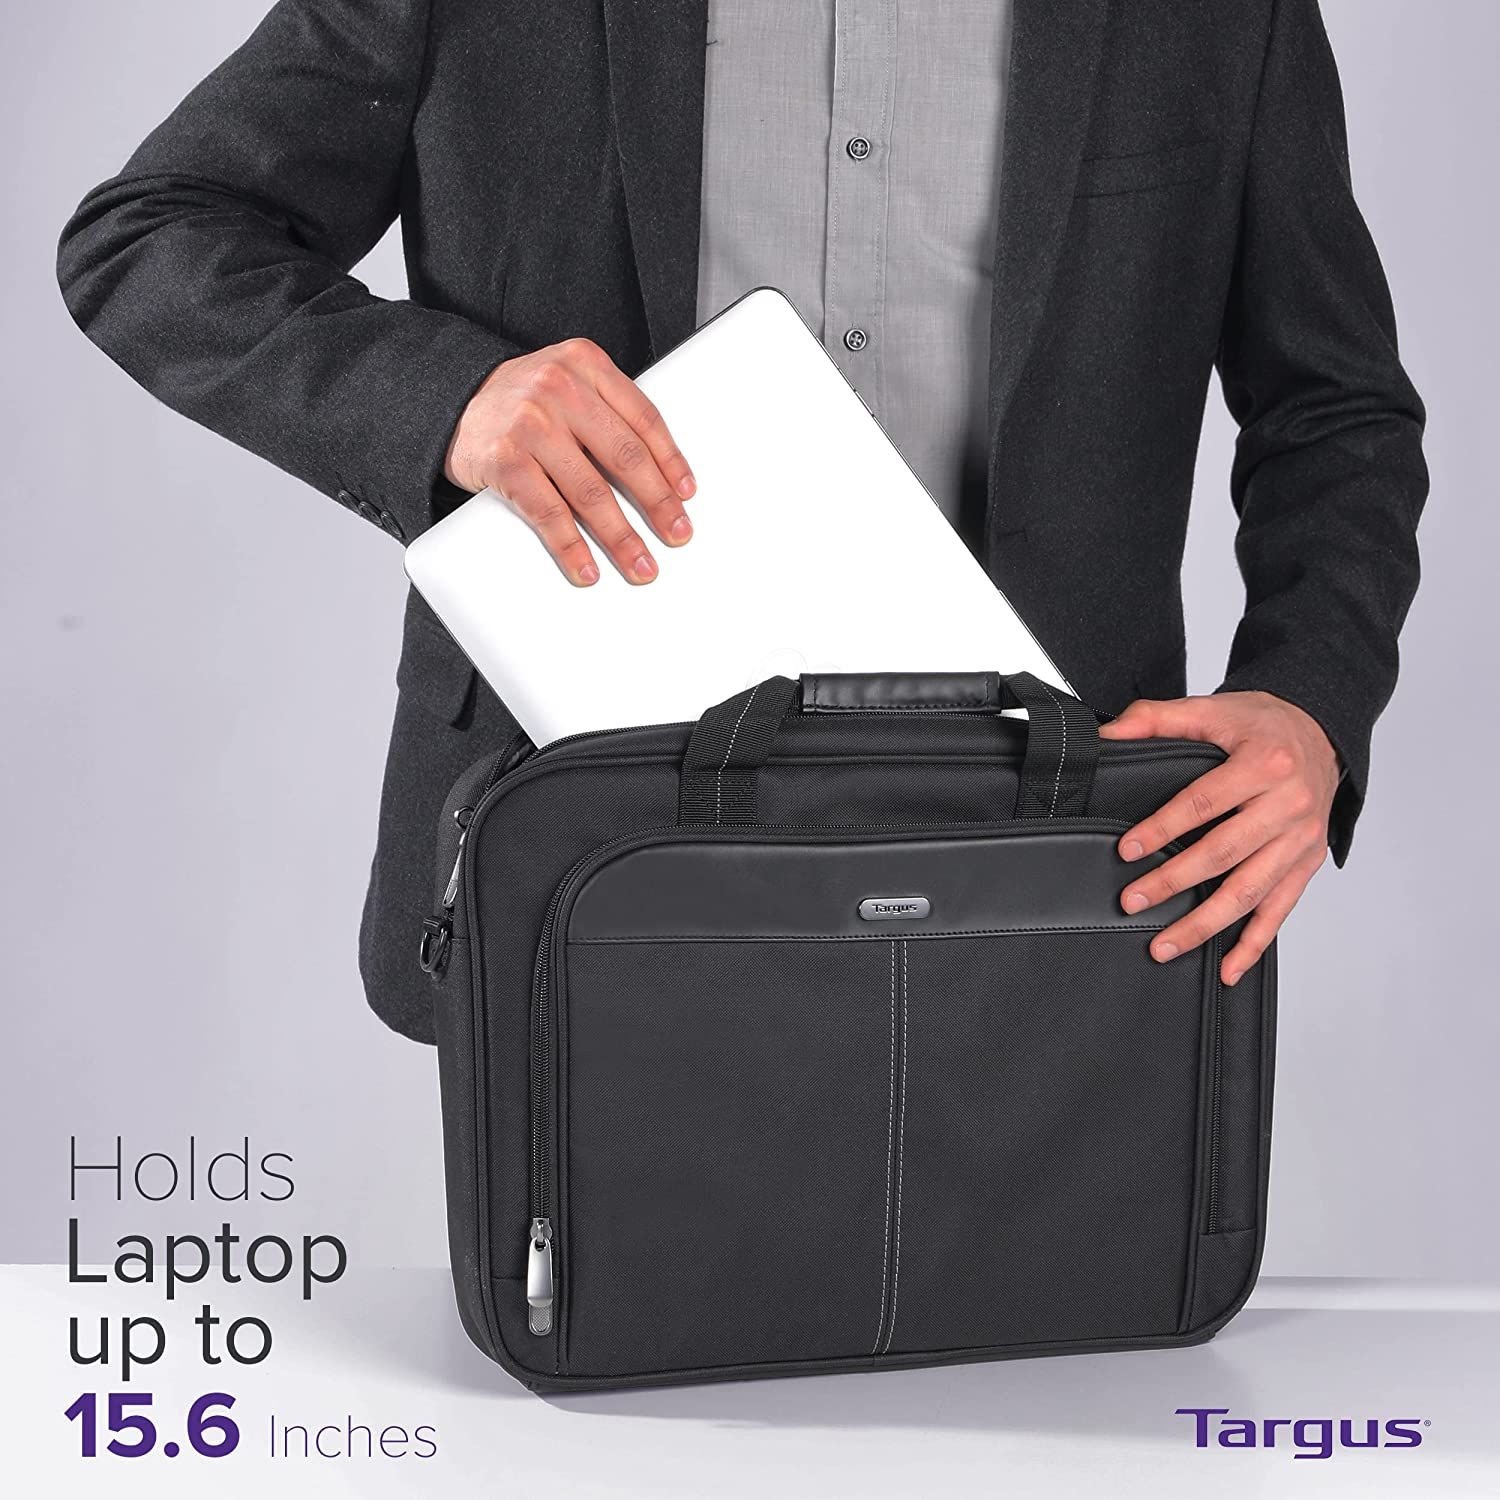 Targus Laptop Bag Size